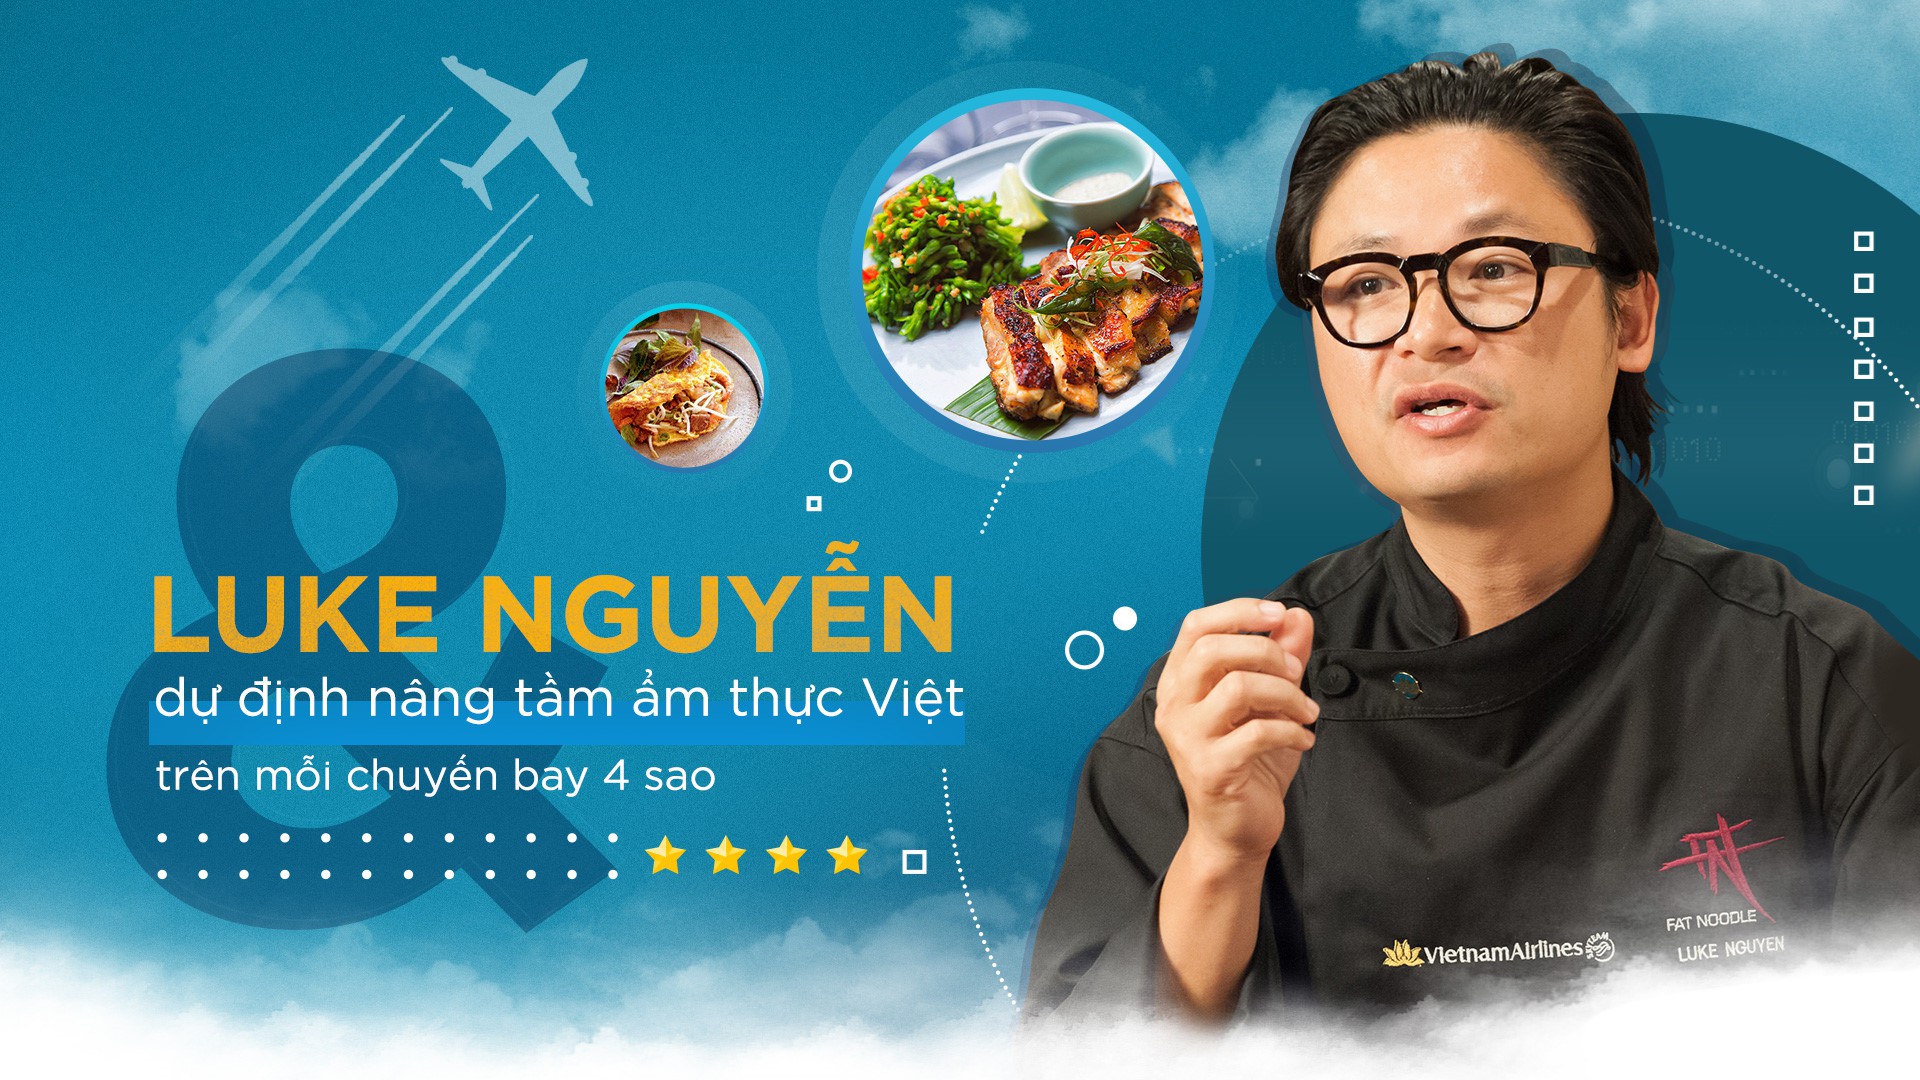 Phù thủy ẩm thực gốc Việt - Luke Nguyễn: 5 tuổi biết nấu ăn, 14 tuổi lăn lộn làm nhân viên bếp, 23 tuổi đã có nhà hàng cho riêng mình - Ảnh 5.